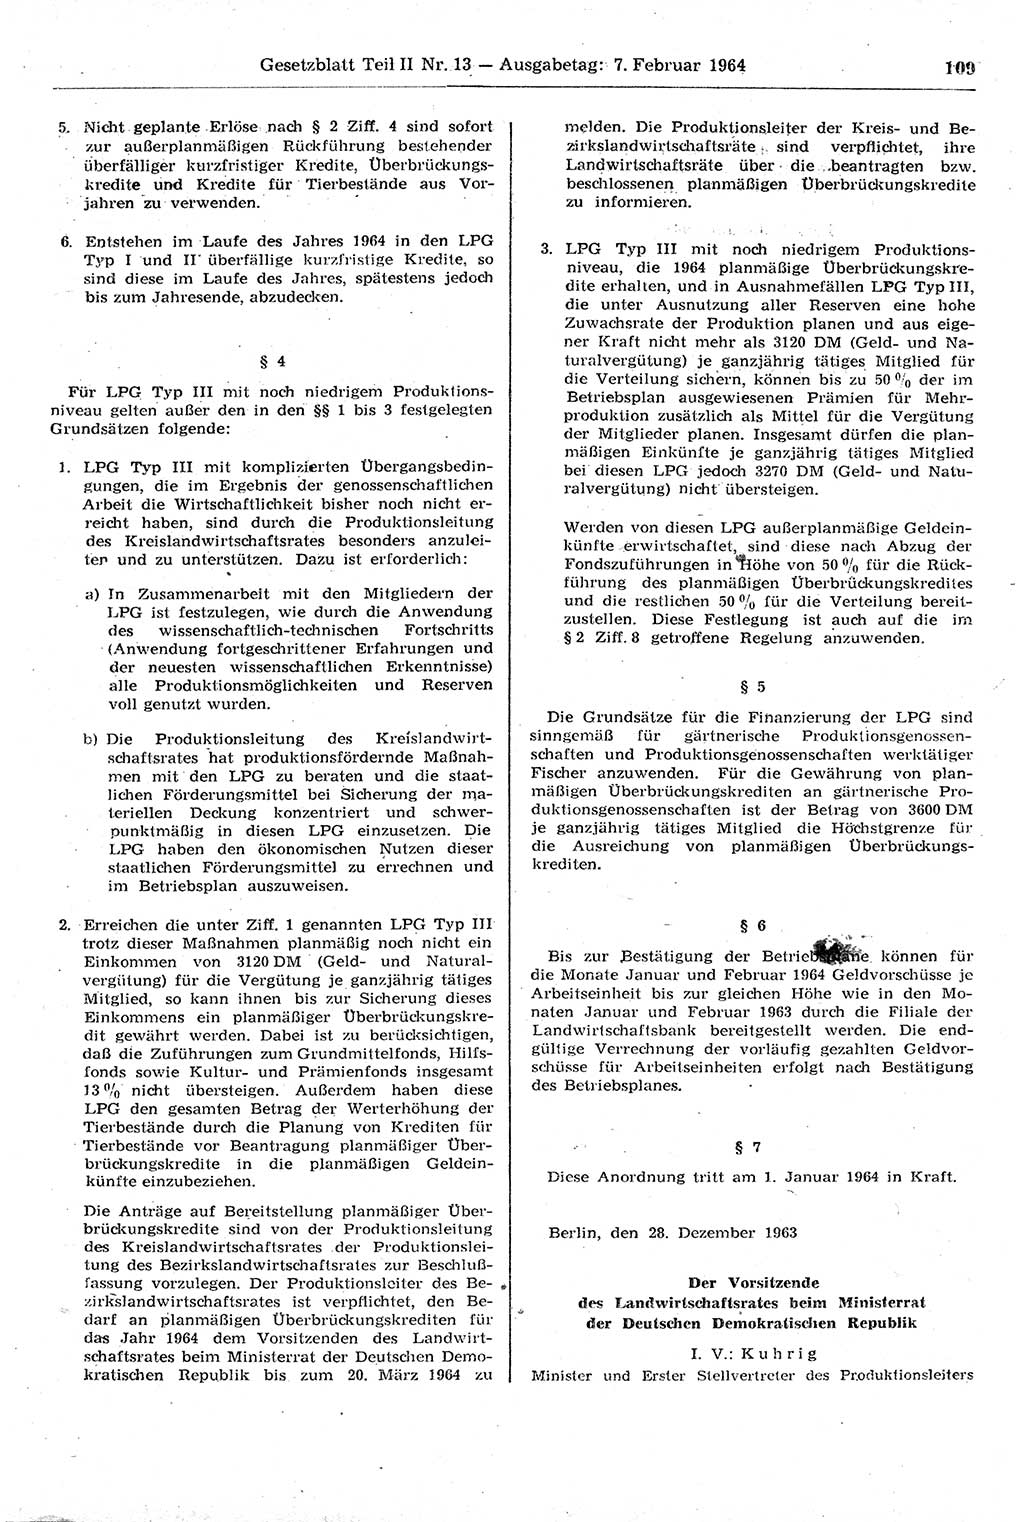 Gesetzblatt (GBl.) der Deutschen Demokratischen Republik (DDR) Teil ⅠⅠ 1964, Seite 109 (GBl. DDR ⅠⅠ 1964, S. 109)